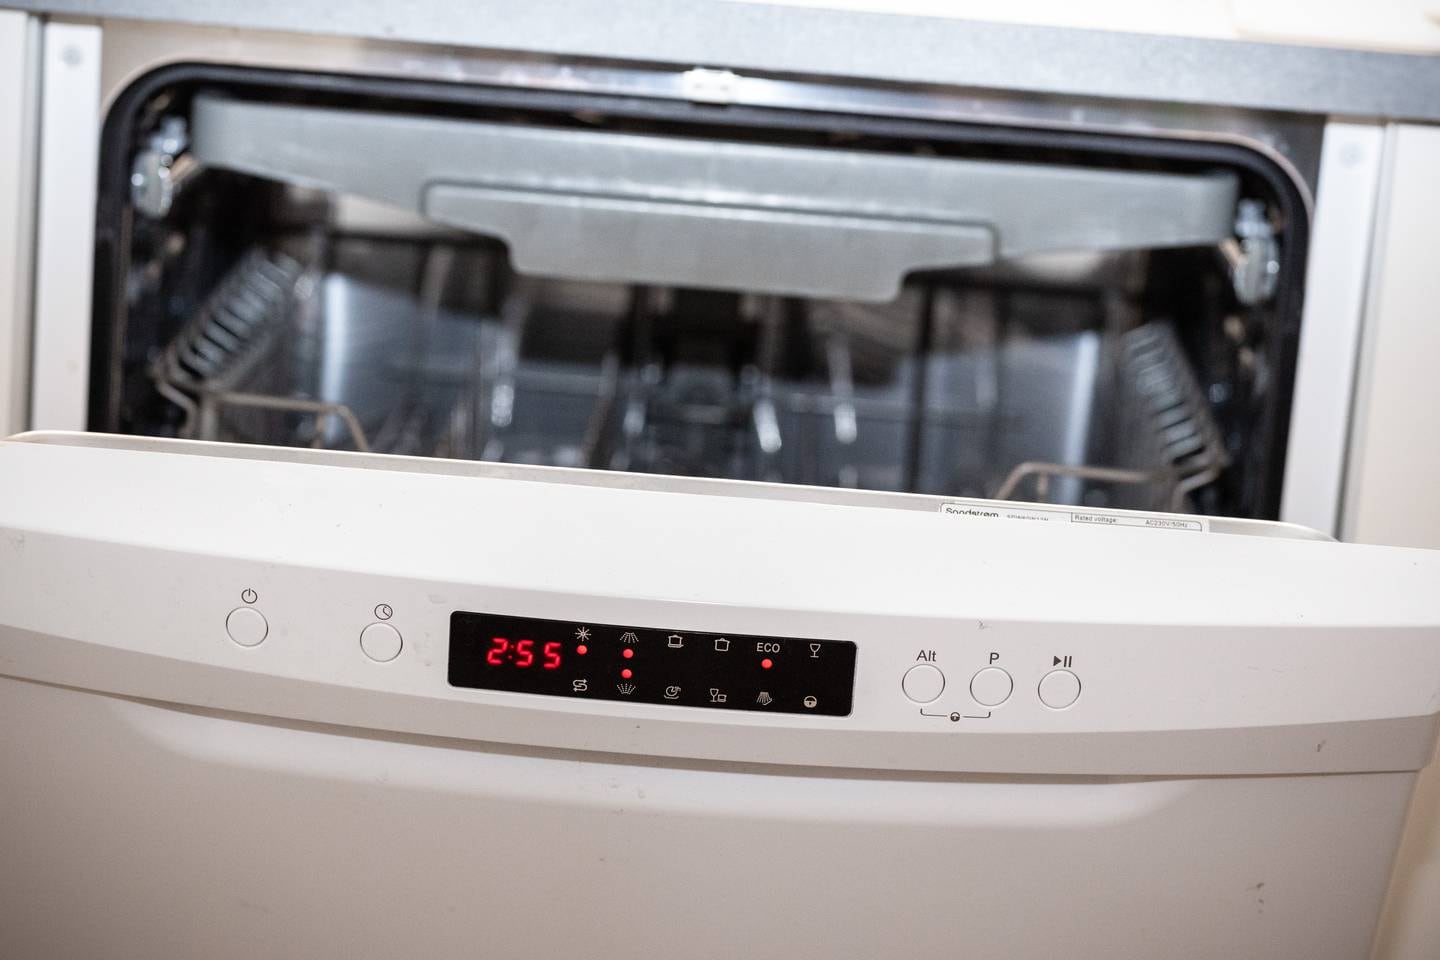 Det kan være fristende å våkne til en ren oppvaskmaskin. Men selv oppvaskmaskinen kan begynne å brenne i løpet av natten.